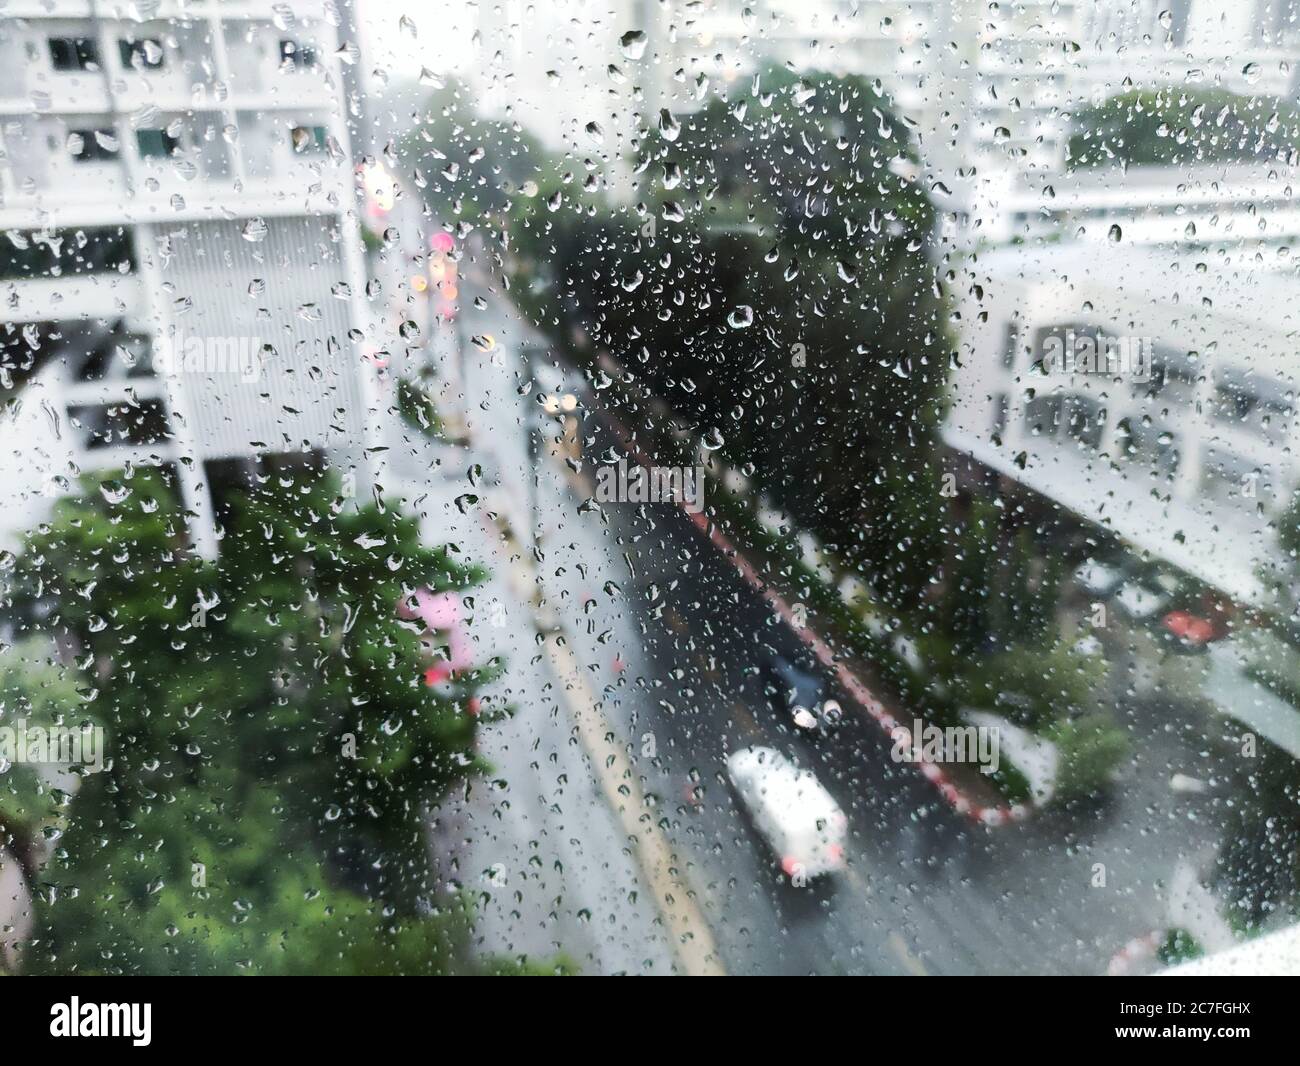 Regen Auf Der Strasse Luftbild Wassertropfen Auf Glas Wohnung Fenster Gefangen Blick Auf Die Strasse Wahrend Sturm Nasse Strasse Und Vorsichtiges Fahren Co Stockfotografie Alamy